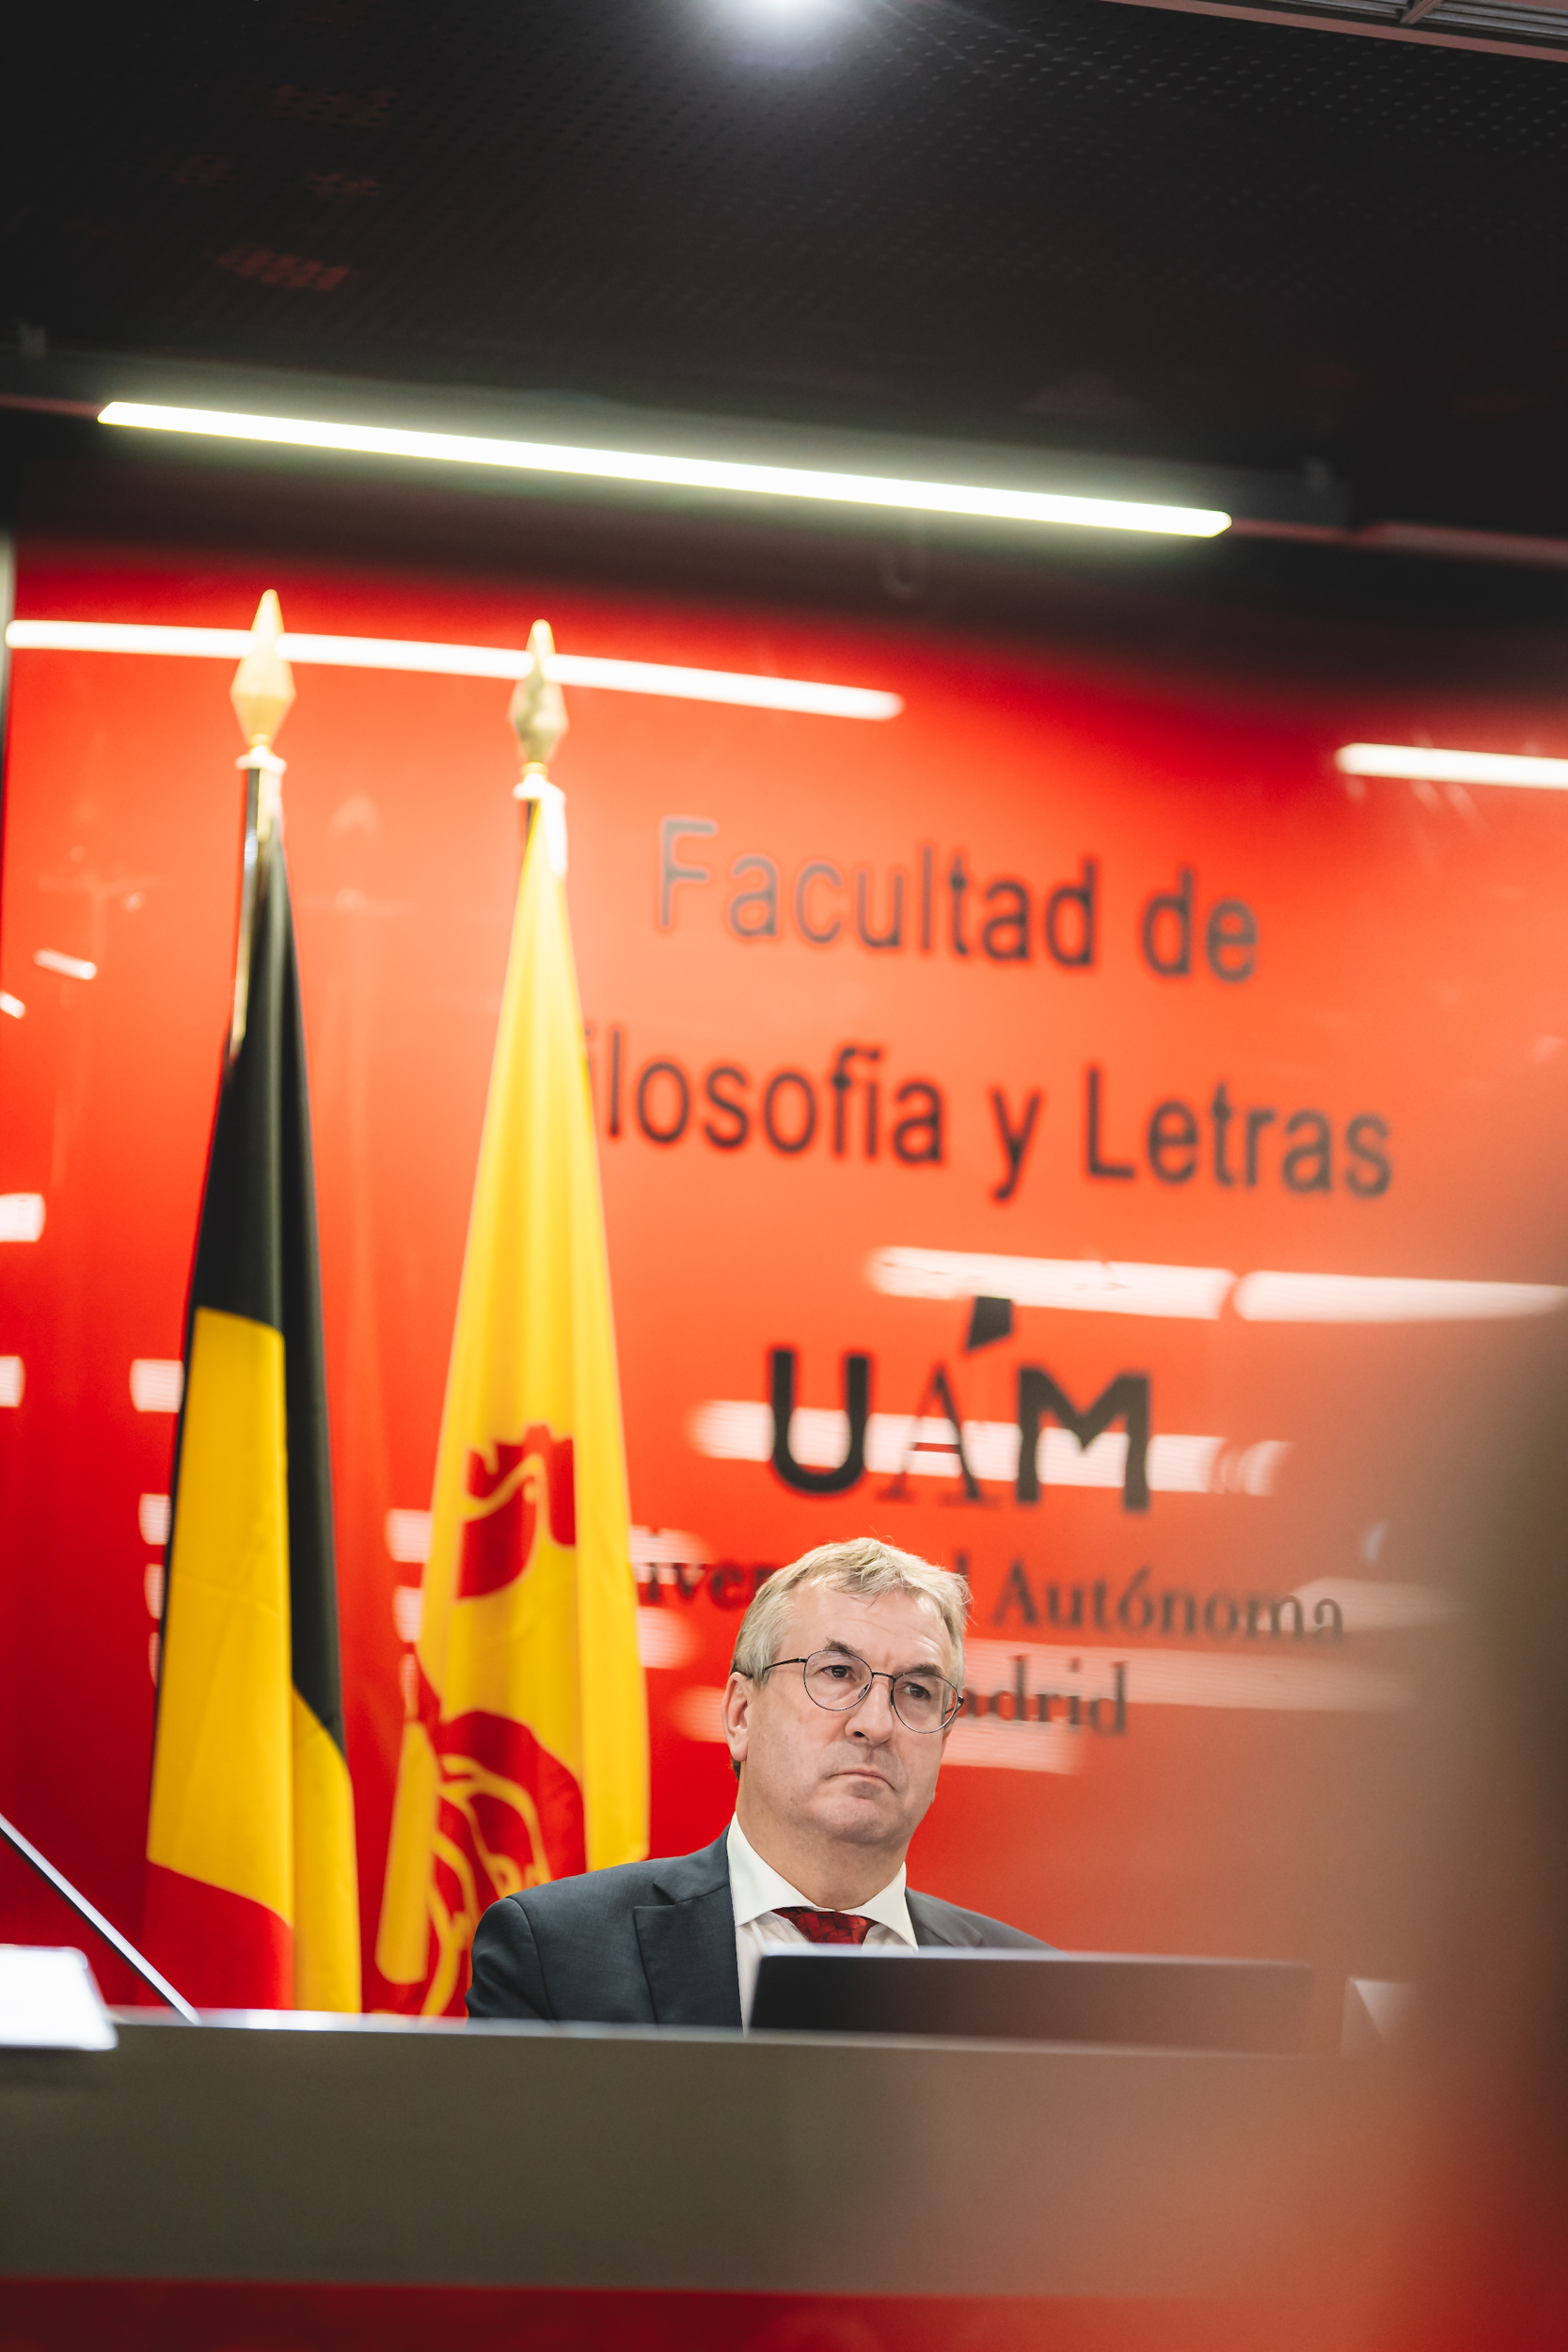 Conférence à l'Université Autonome de Madrid (UAM) (c) J. Van Belle - WBI